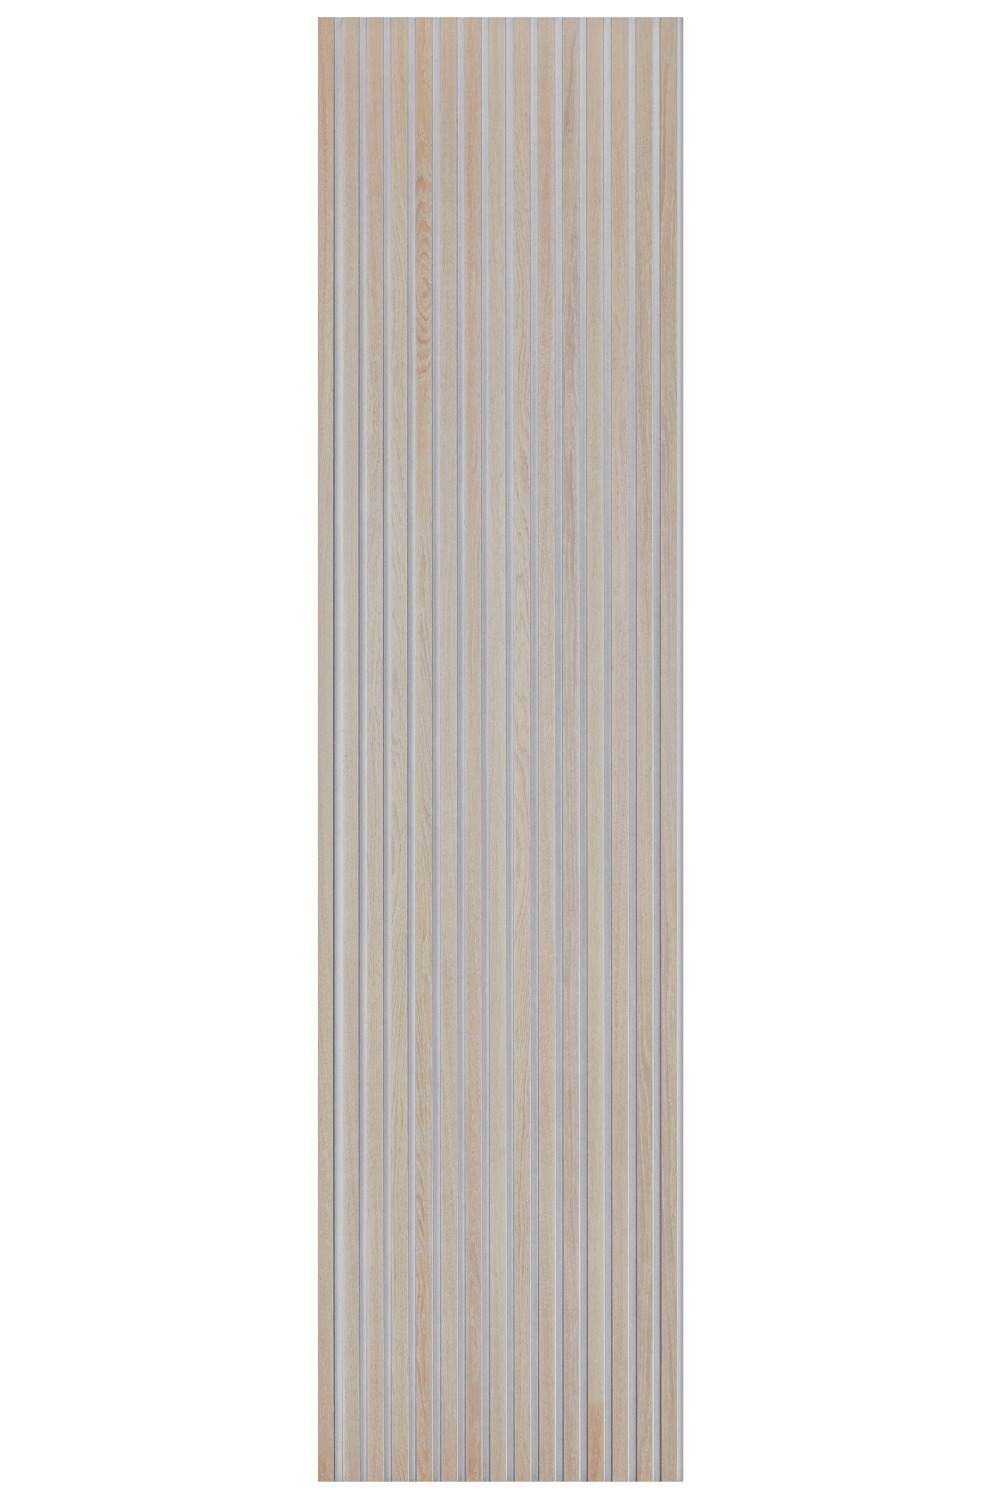 Full size panel of Washed Oak SlatWall on a grey felt backing